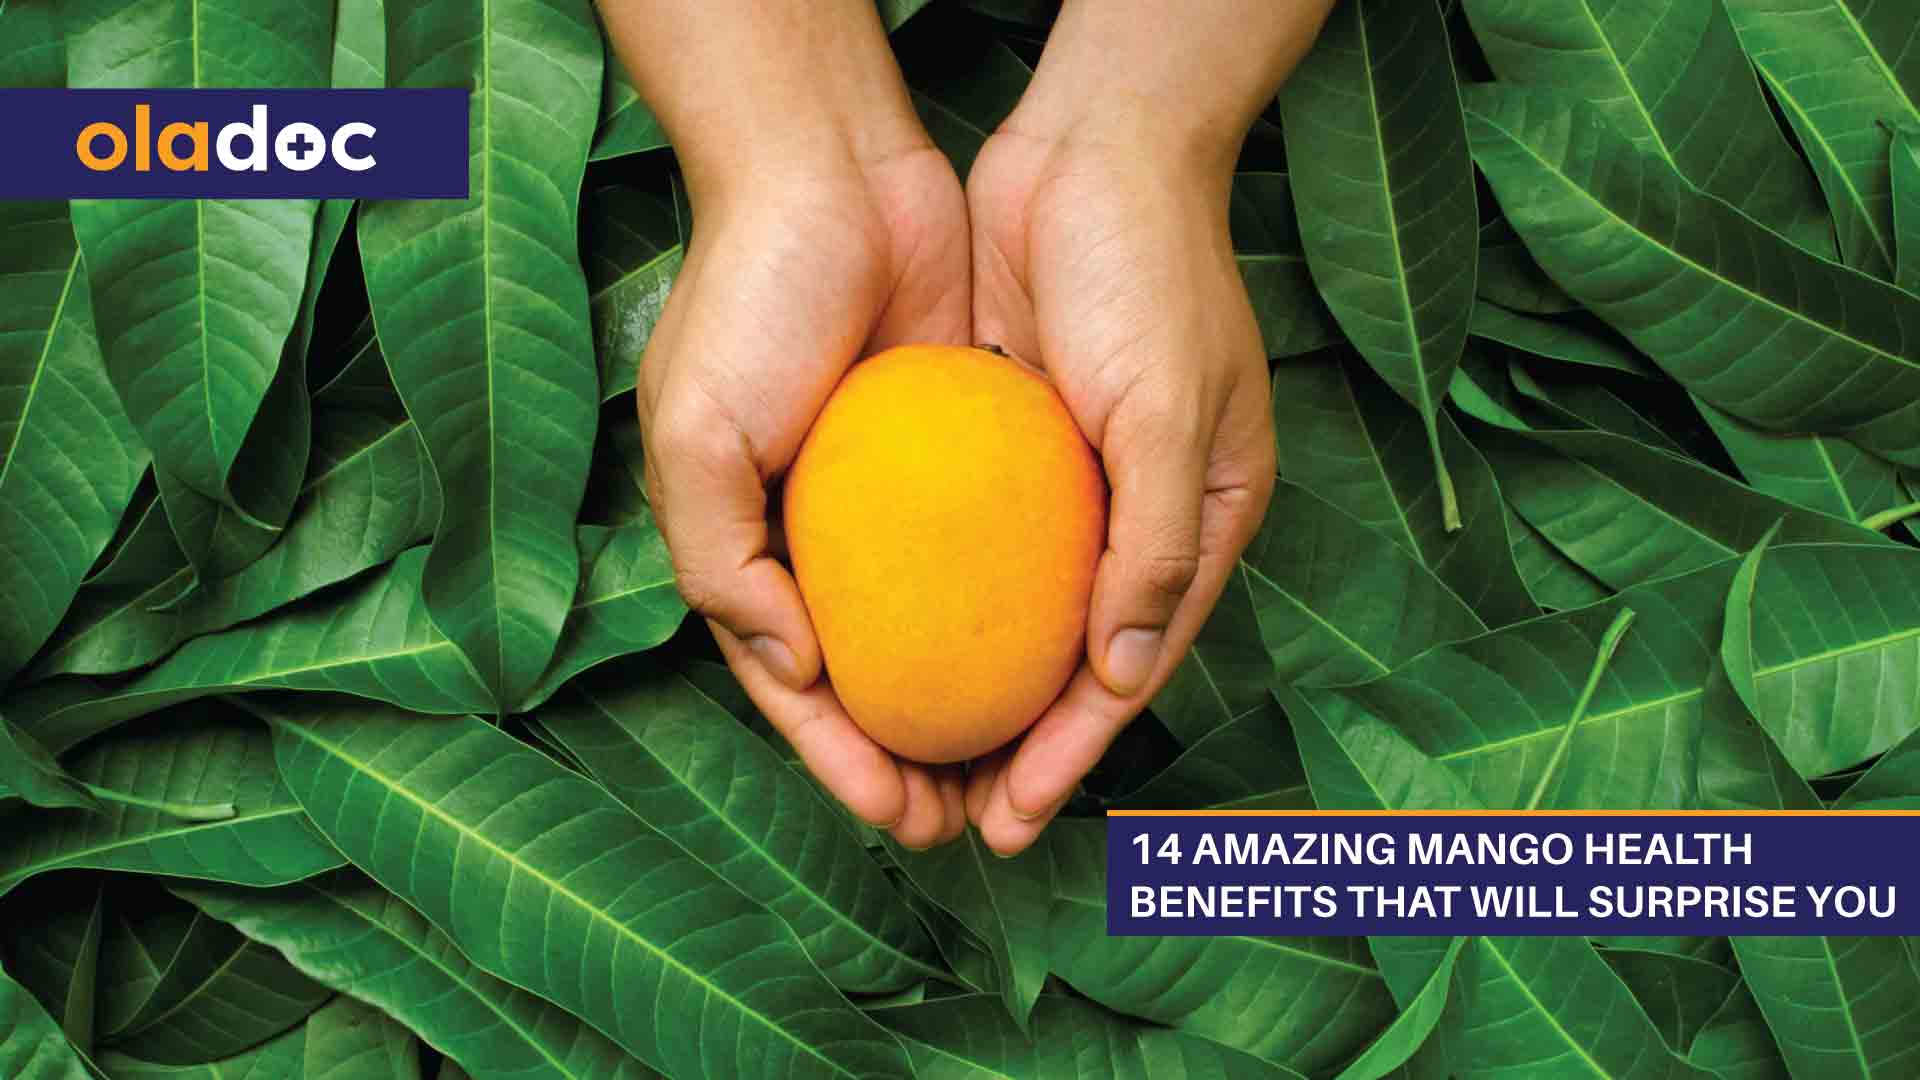 Mango Health Benefits: 14 Amazing Reasons to Eat Mangoes